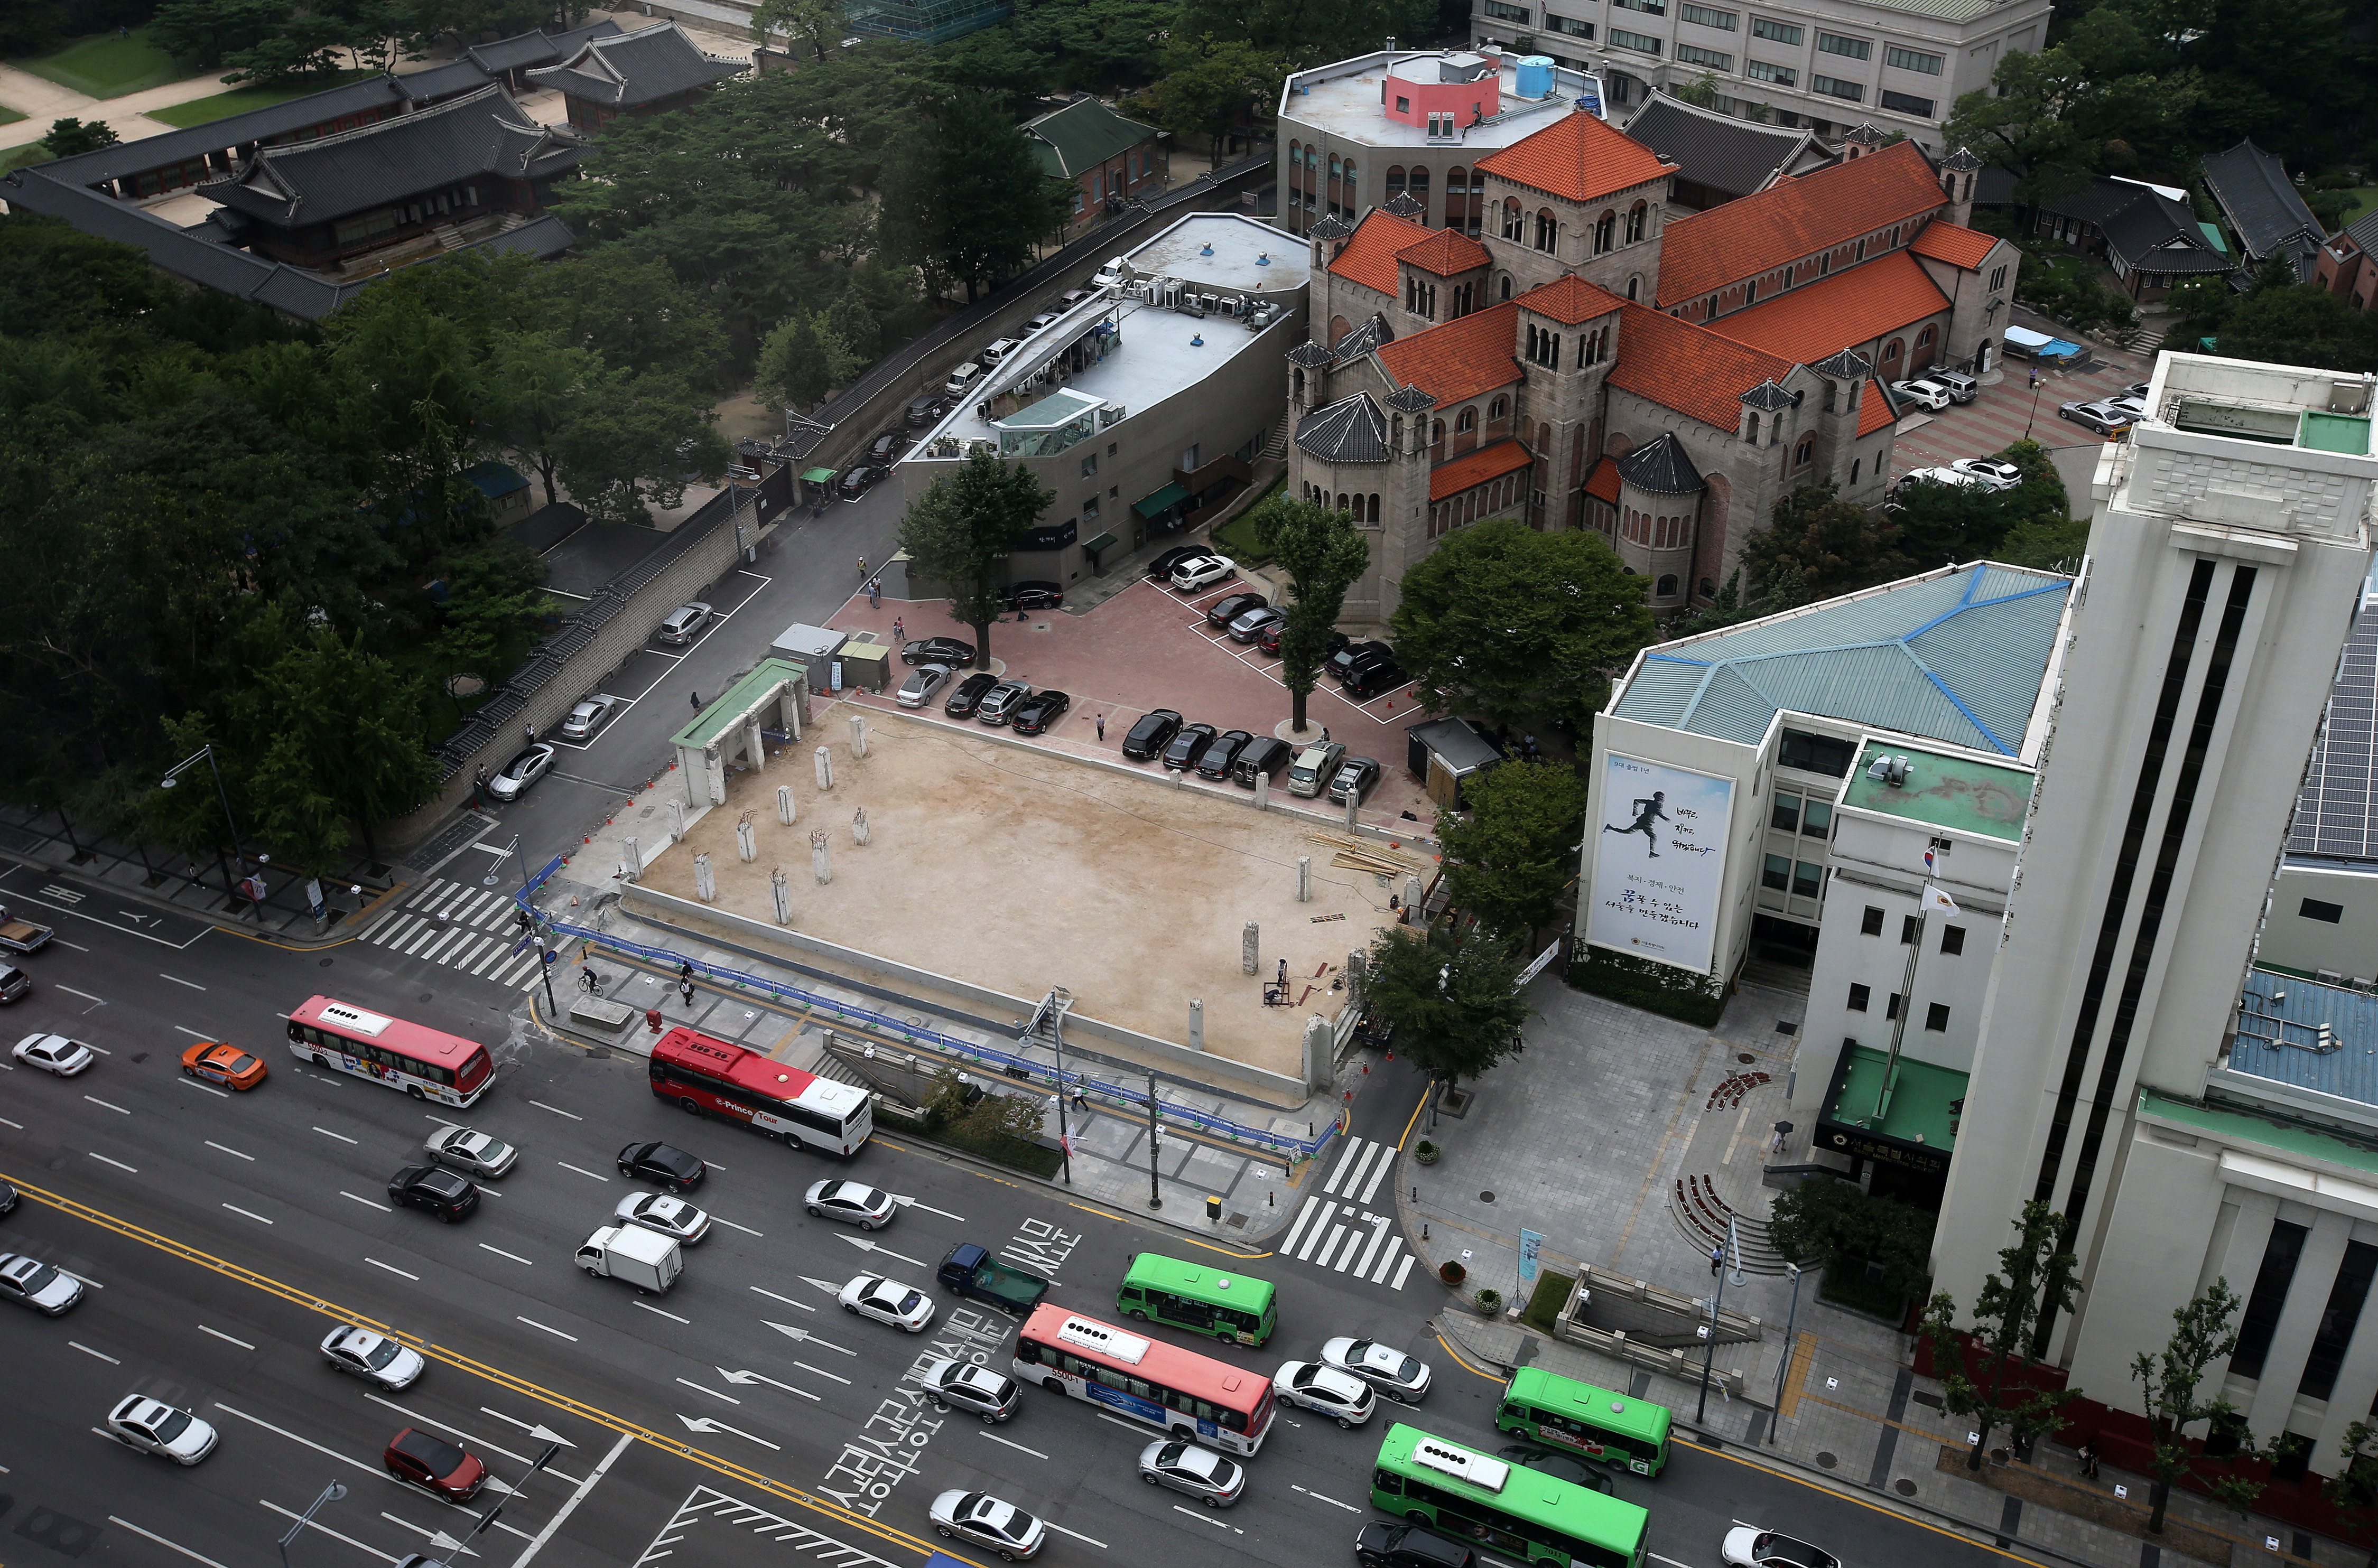 위에서 내려다본 성공회 서울성당 모습. 국세청별관이 자리에는 기둥만 남아있다. 서울시는 이 자리에 시민공원을 조성할 계획이다.